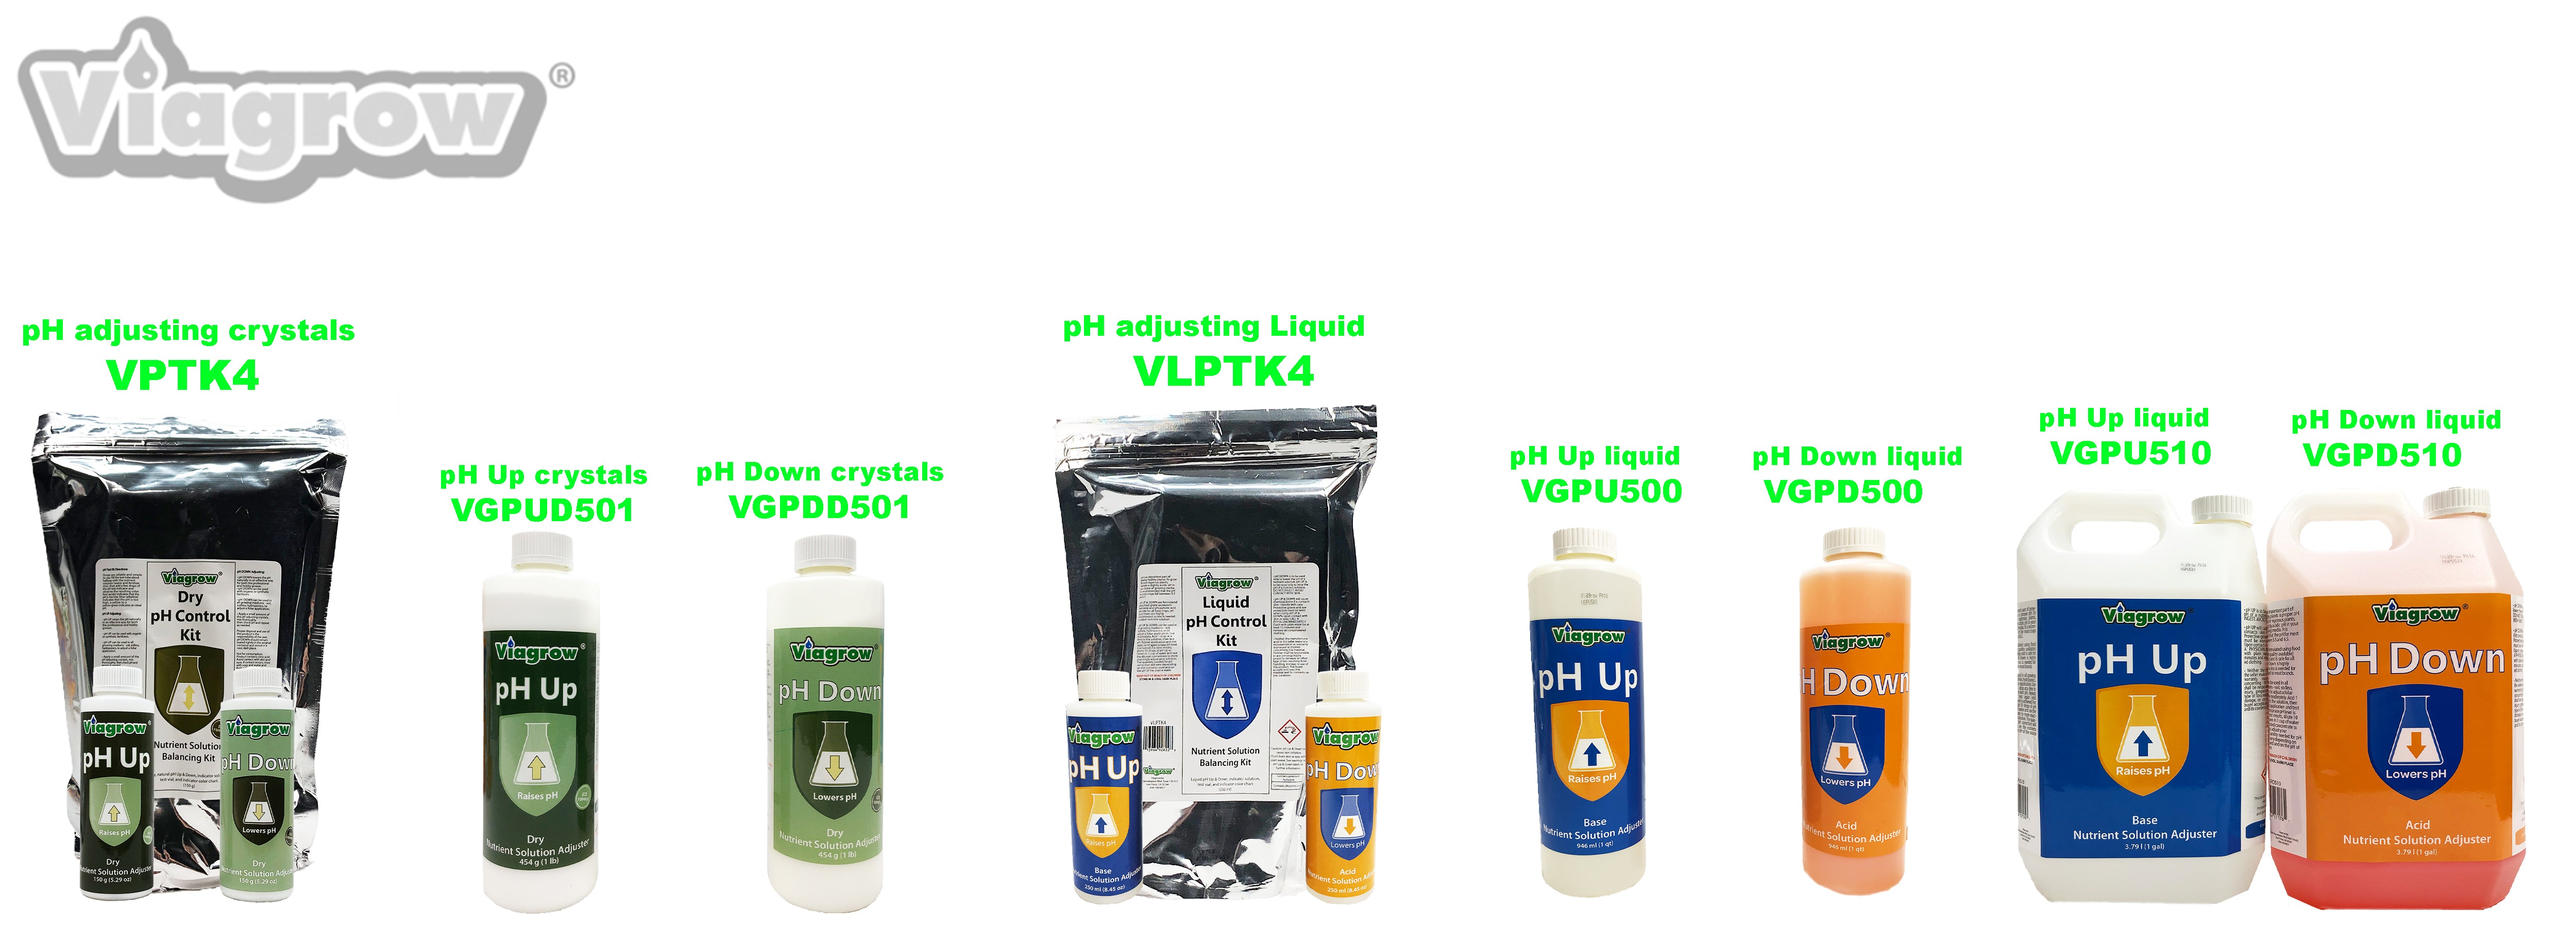 Viagrow VGPD510 Solución de ajuste de nutrientes líquidos pH Down, galones, 6 por caja